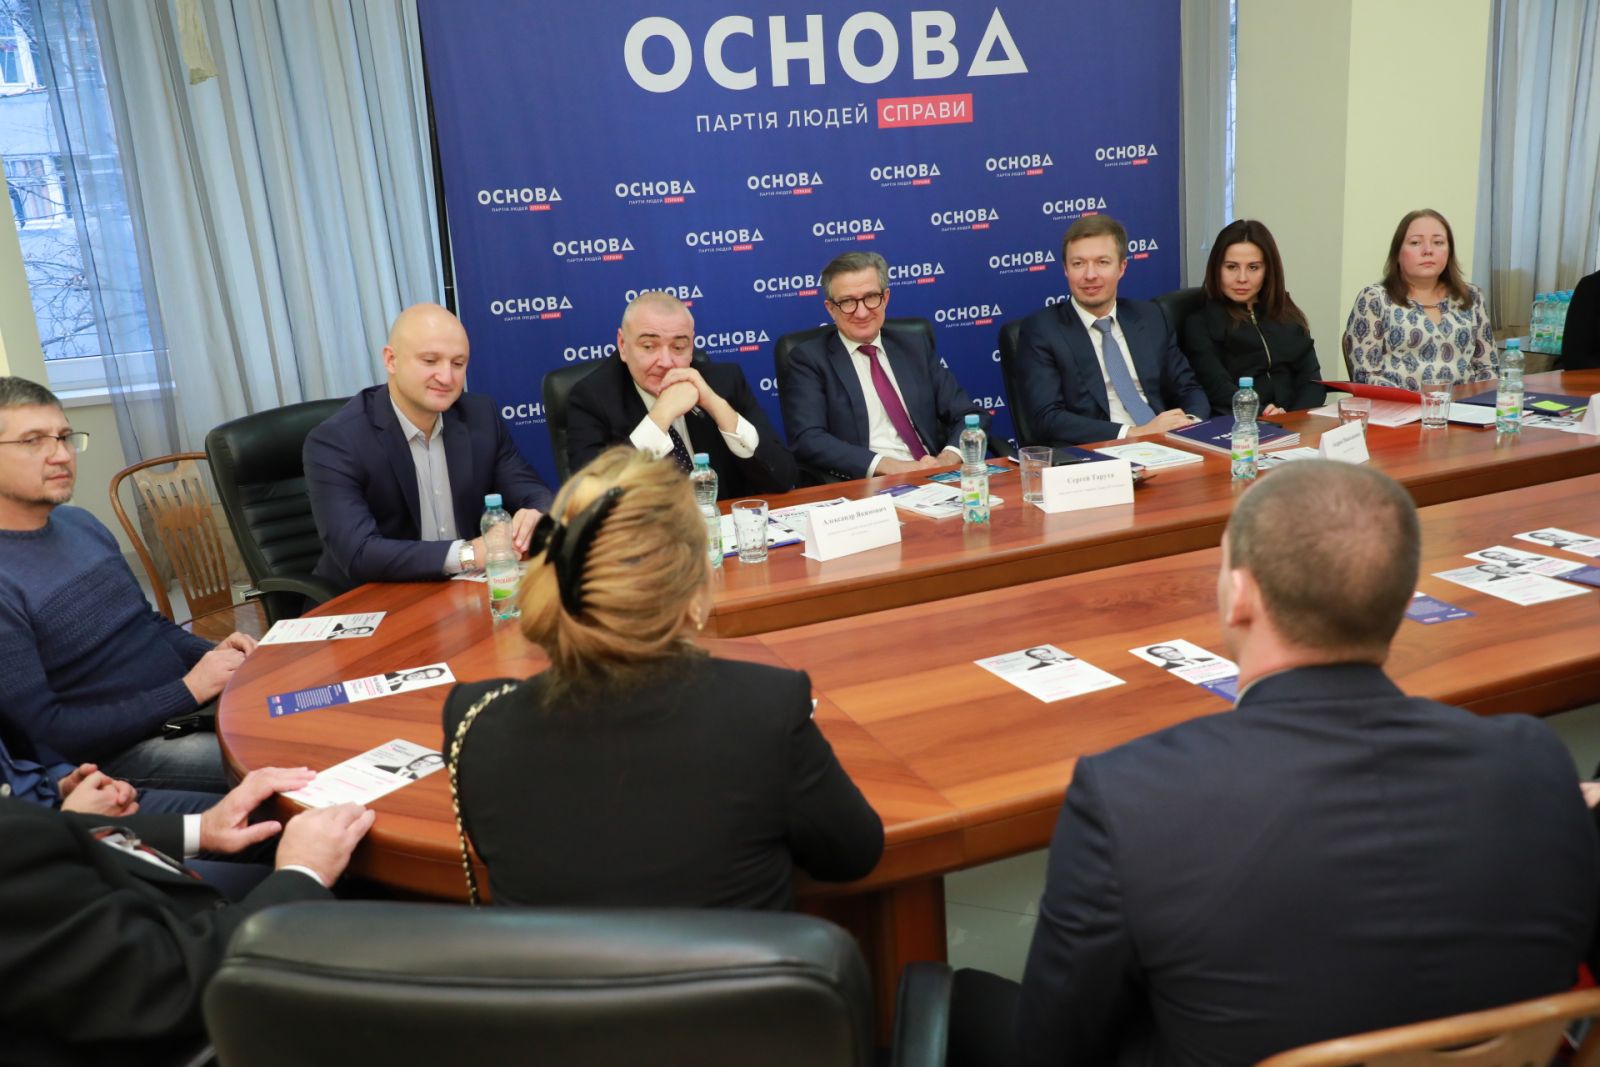 пресс-конференция с лидерами политической партии «Основа»